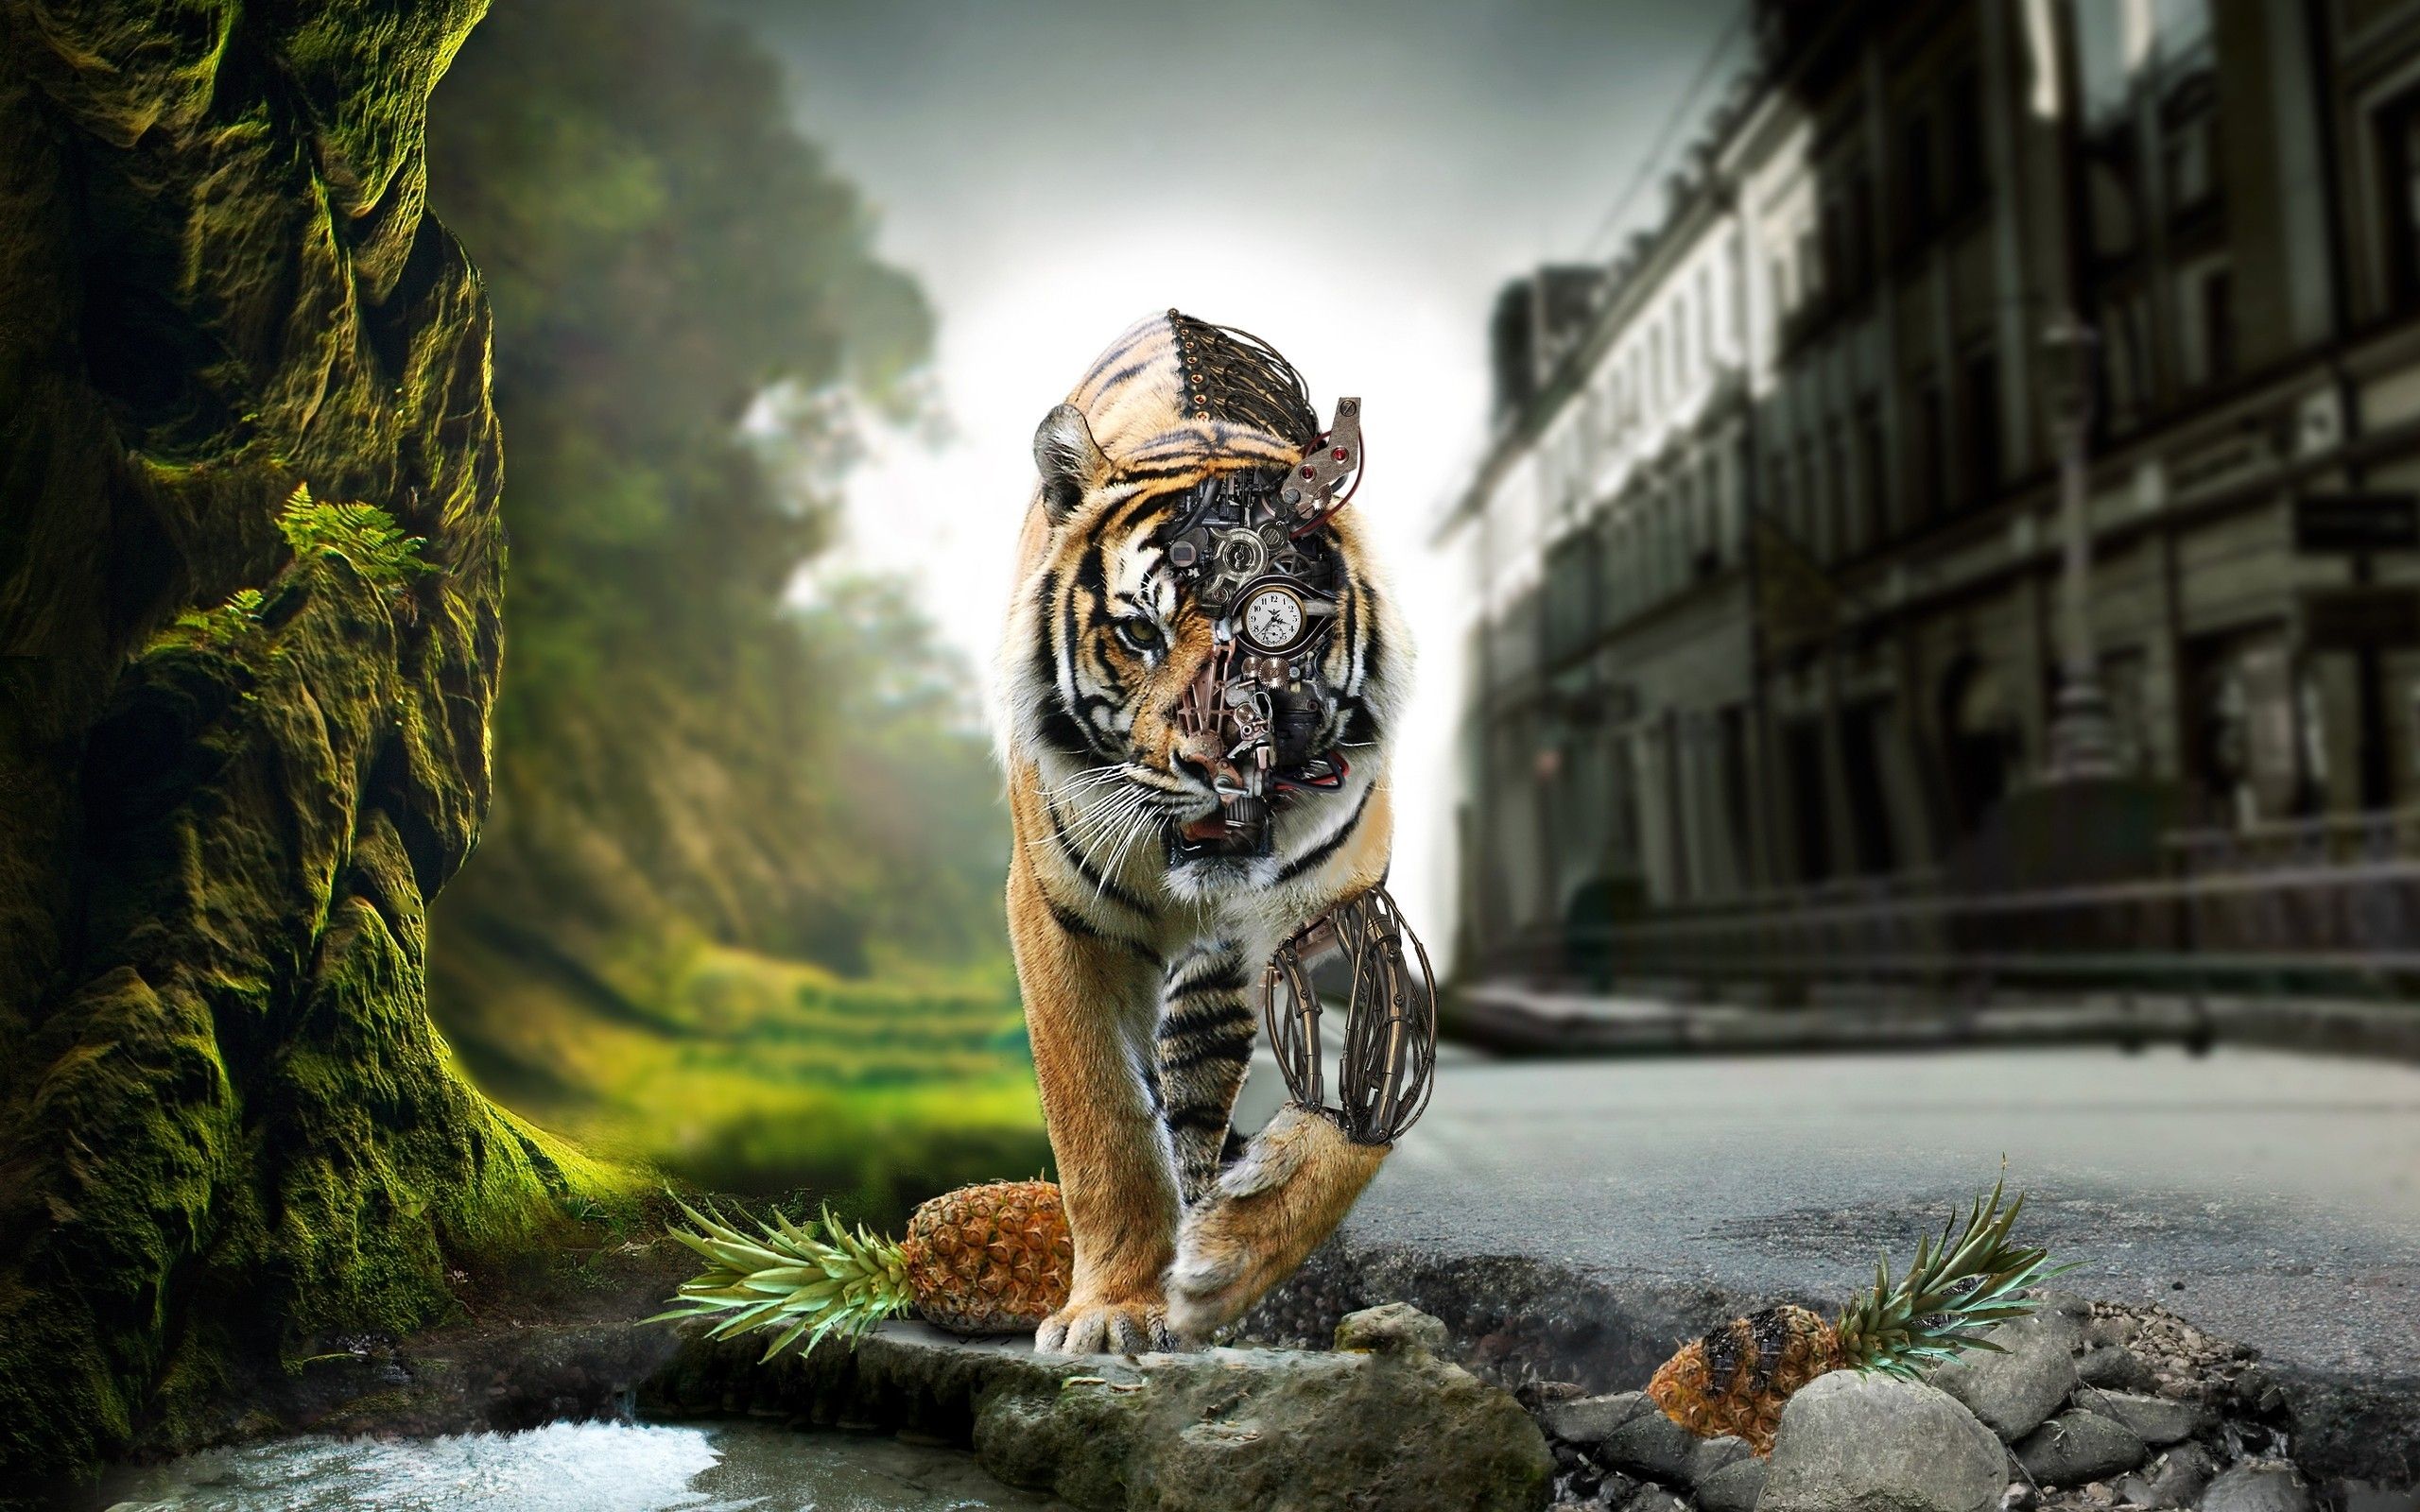 8k tiger uhd